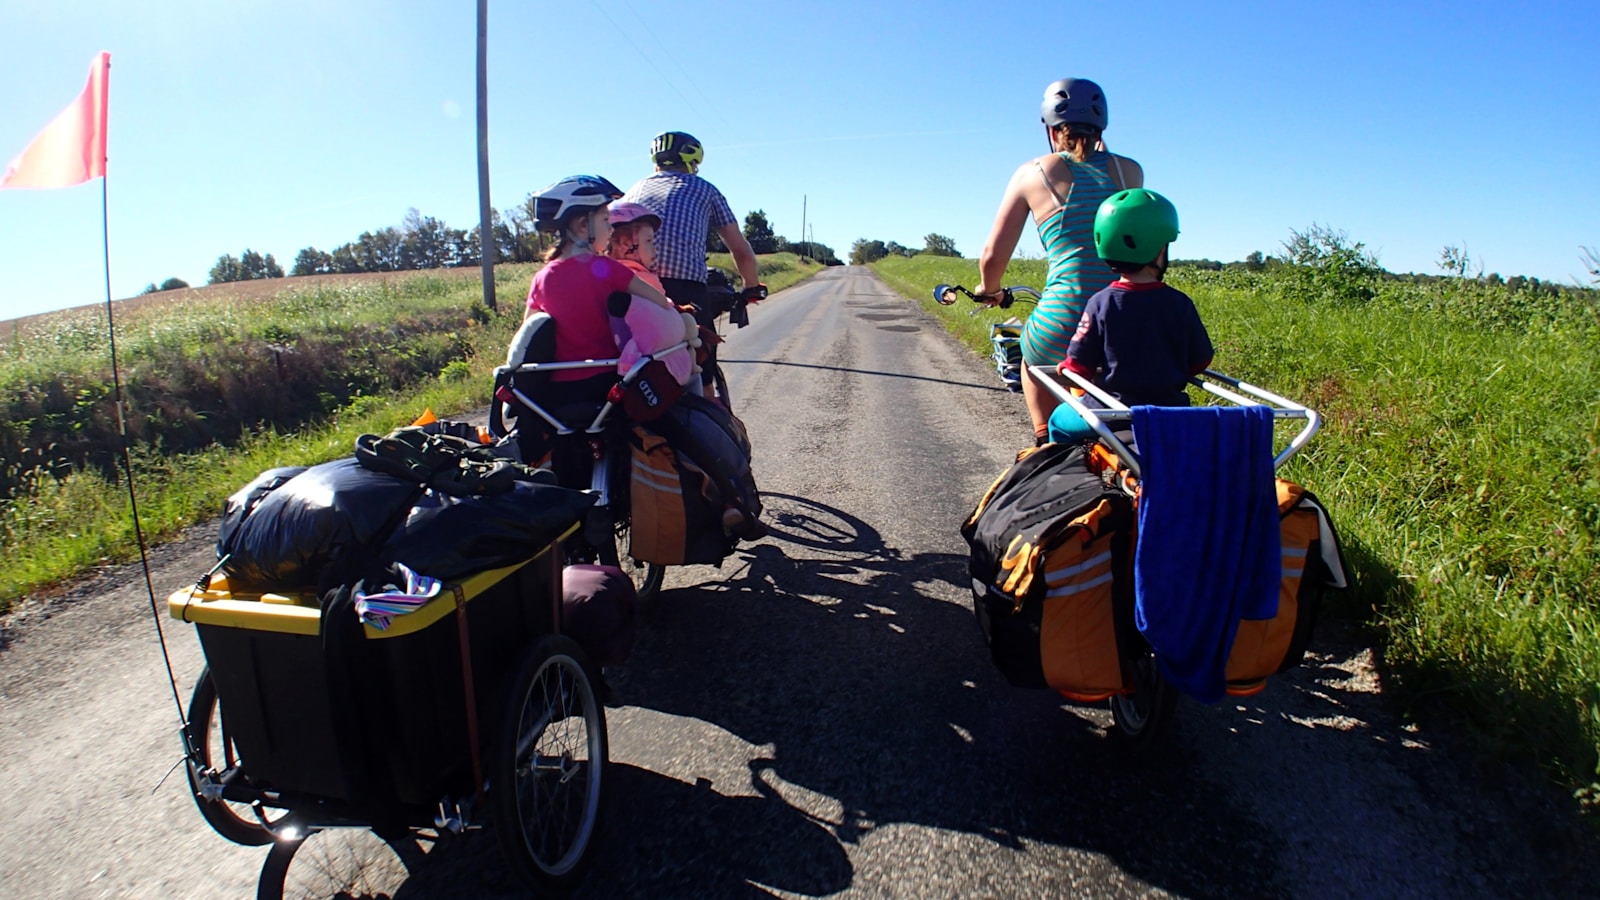 Trasy rowerowe z dziećmi. Gdzie pojechać na rodzinną wycieczkę?